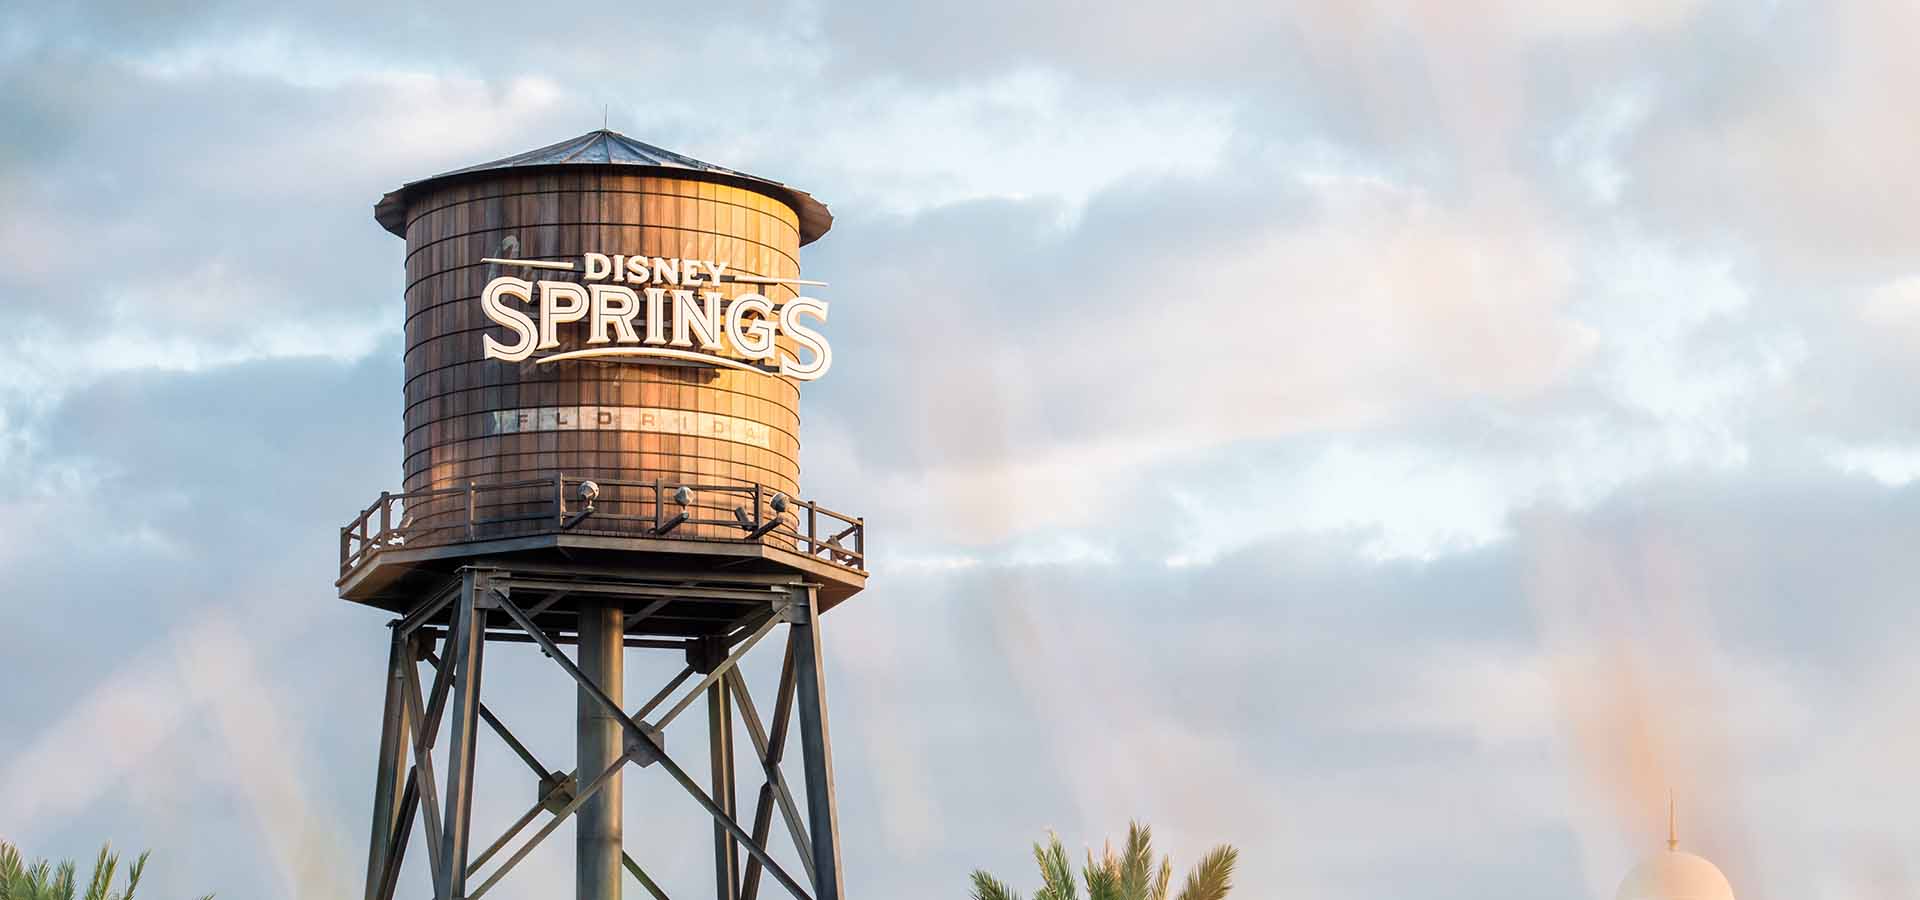 منظر لبرج مياه ديزني سبرينغز